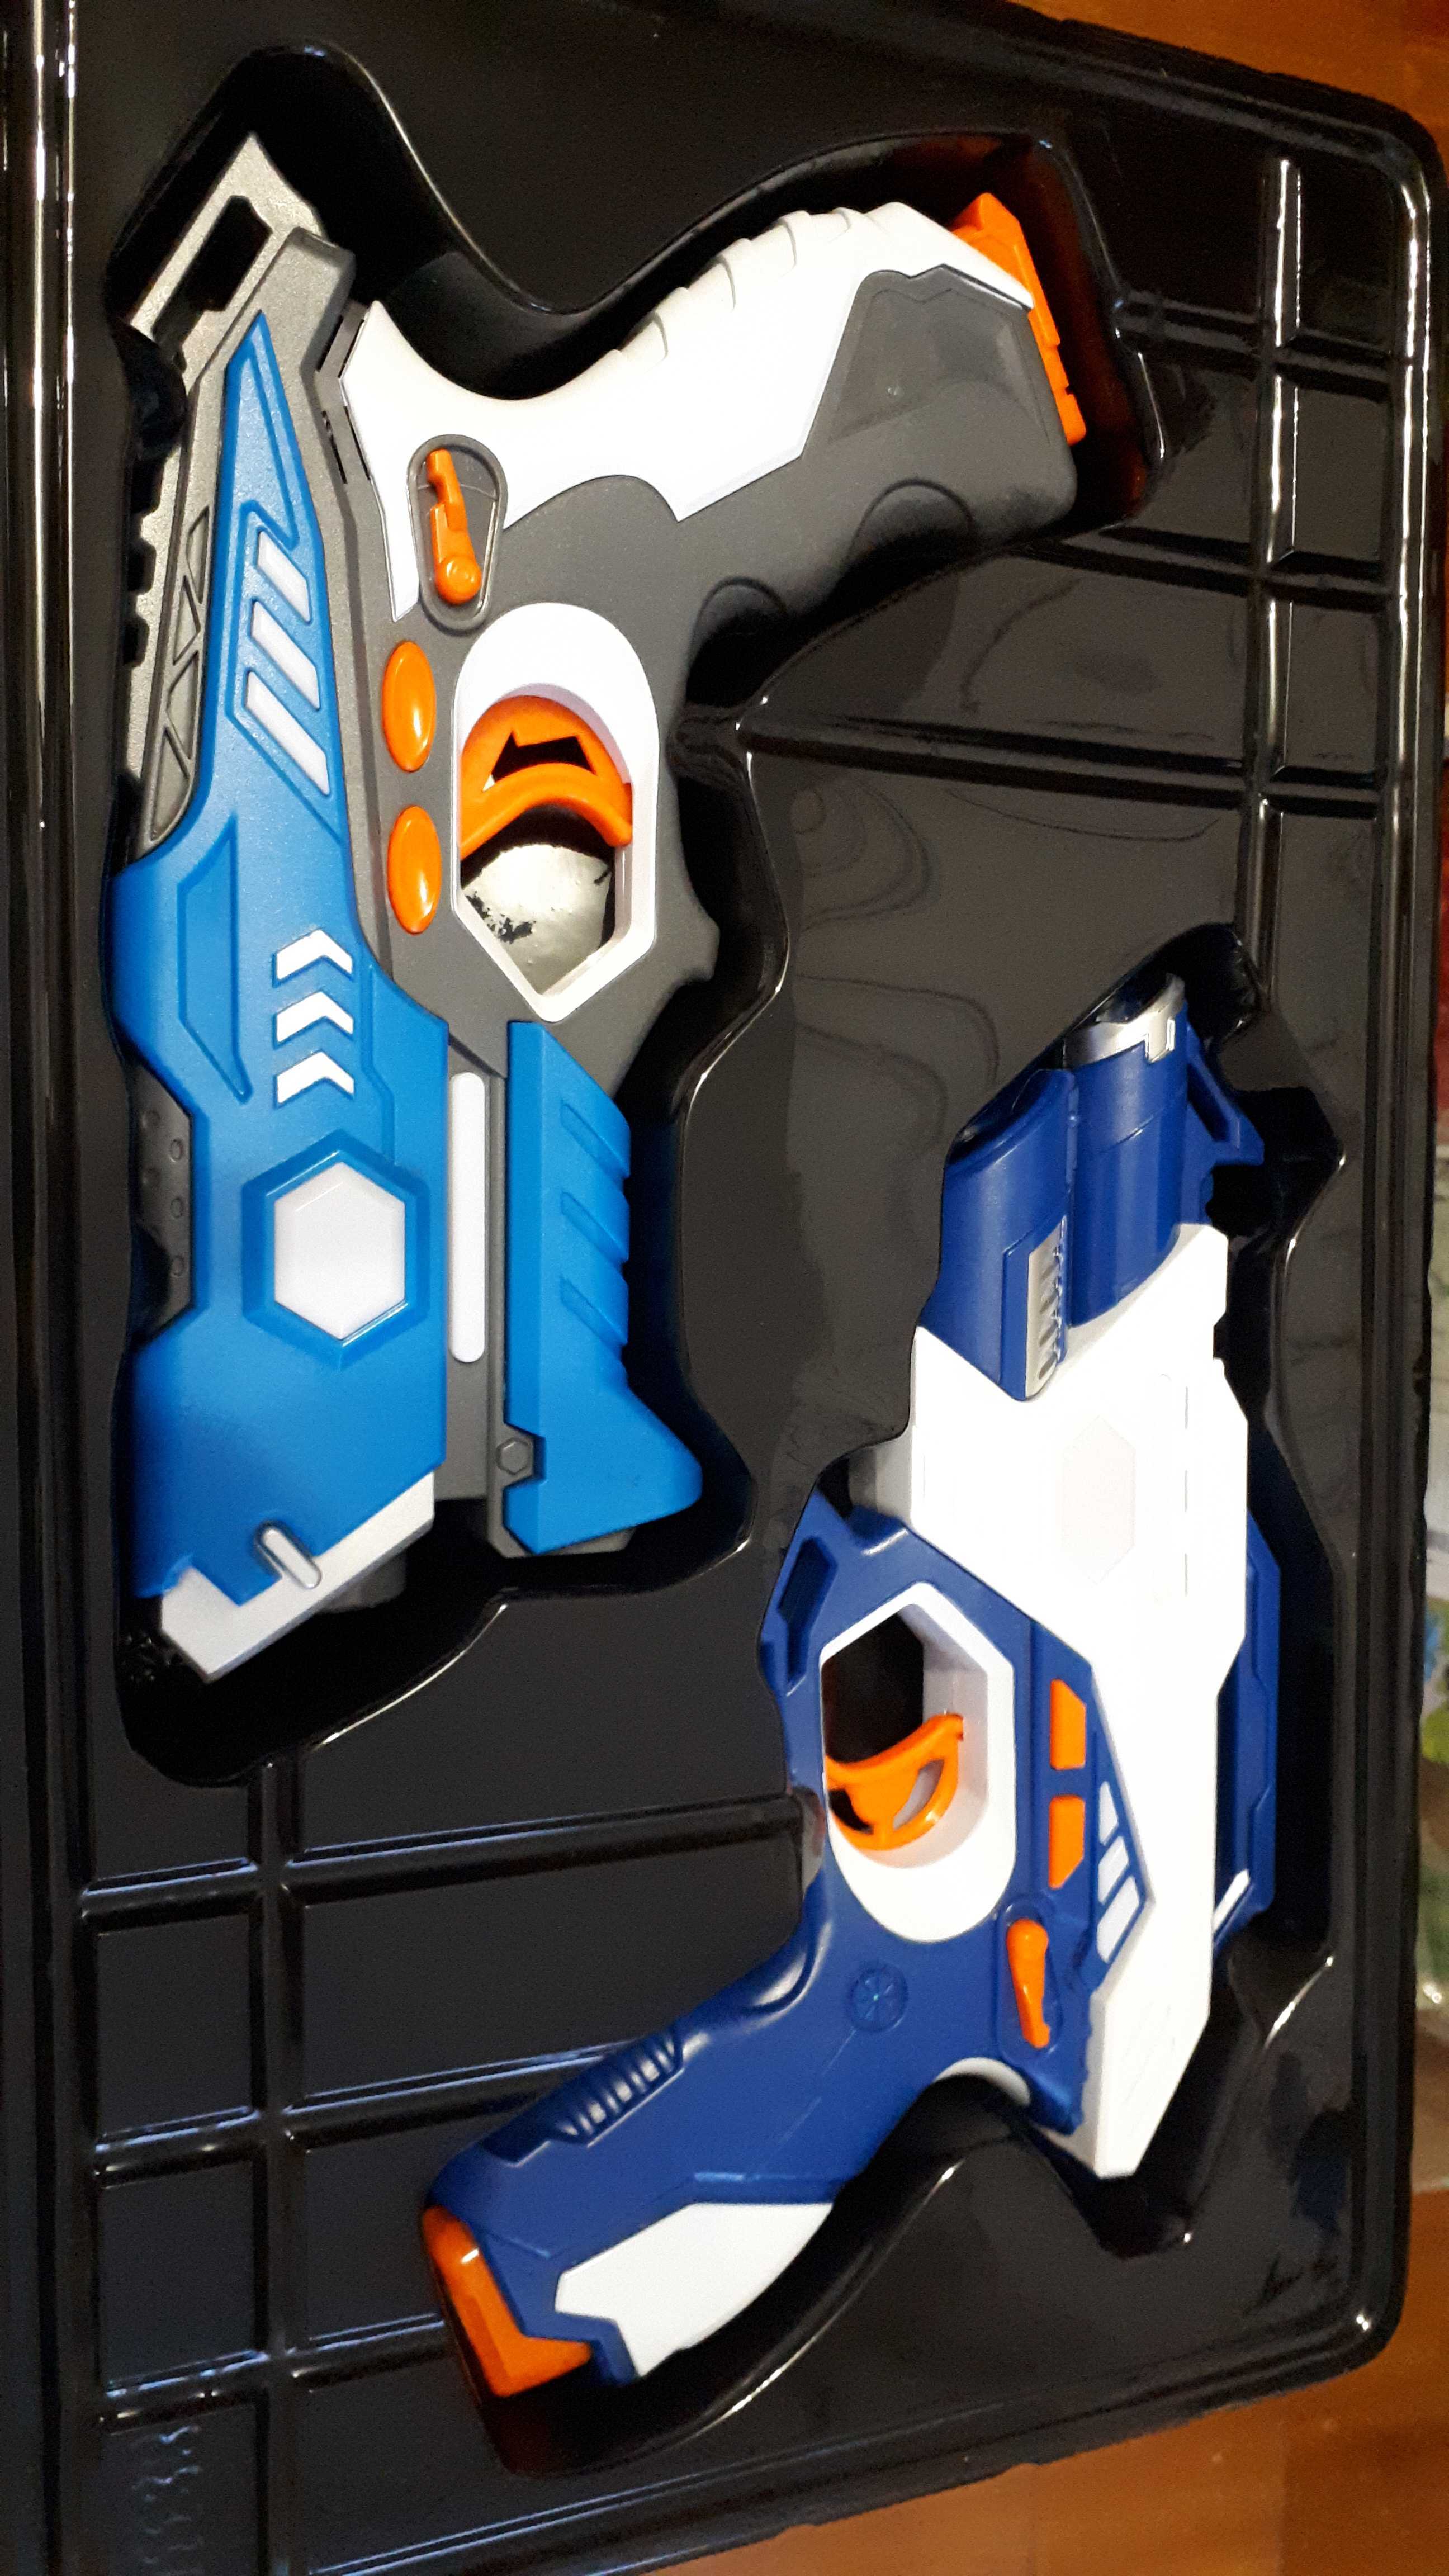 Фотография покупателя товара Лазертаг LASERTAG GUN с безопасными инфракрасными лучами, для двух игроков